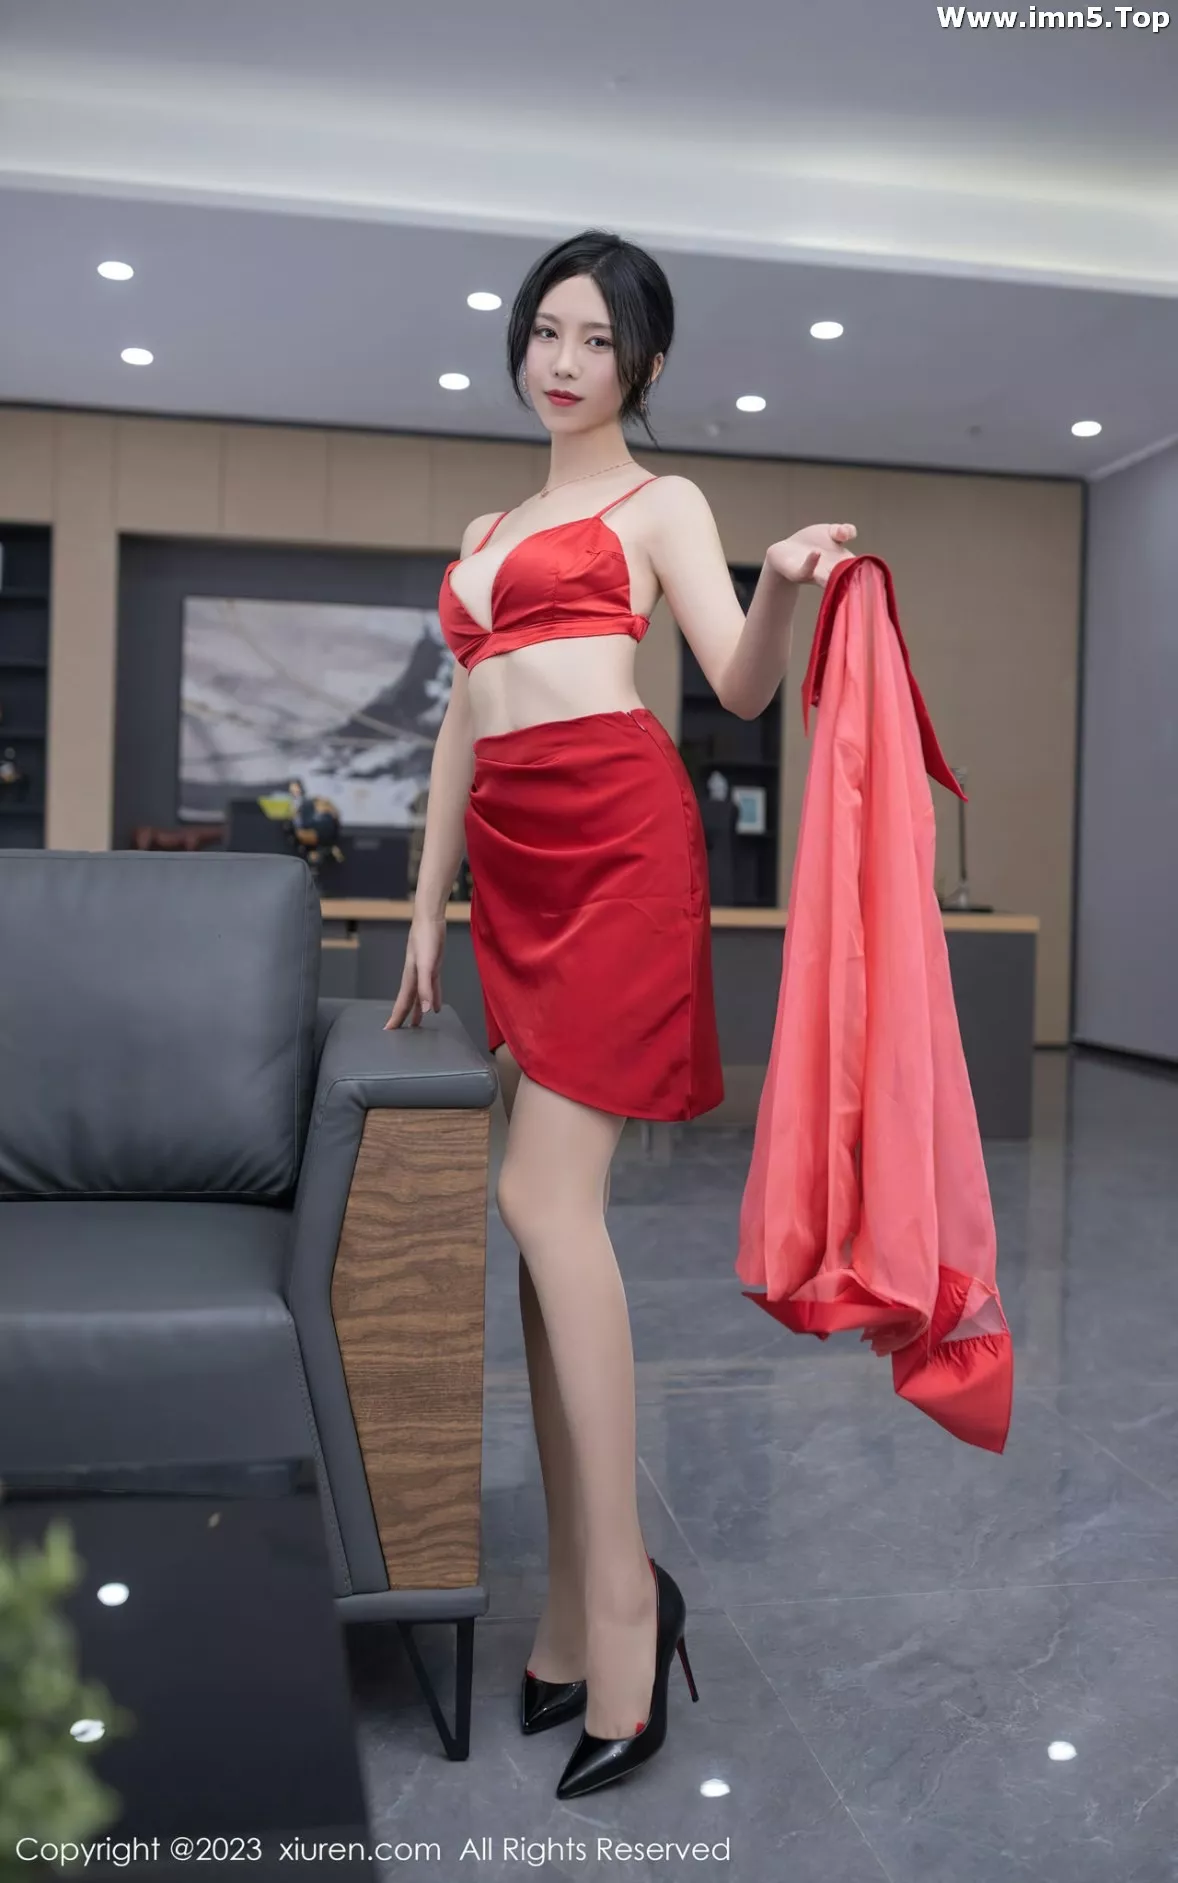 [XiuRen秀人网]No.6189_模特利世女老板角色红色薄透上衣配红短裙露红色内衣诱惑写真73P